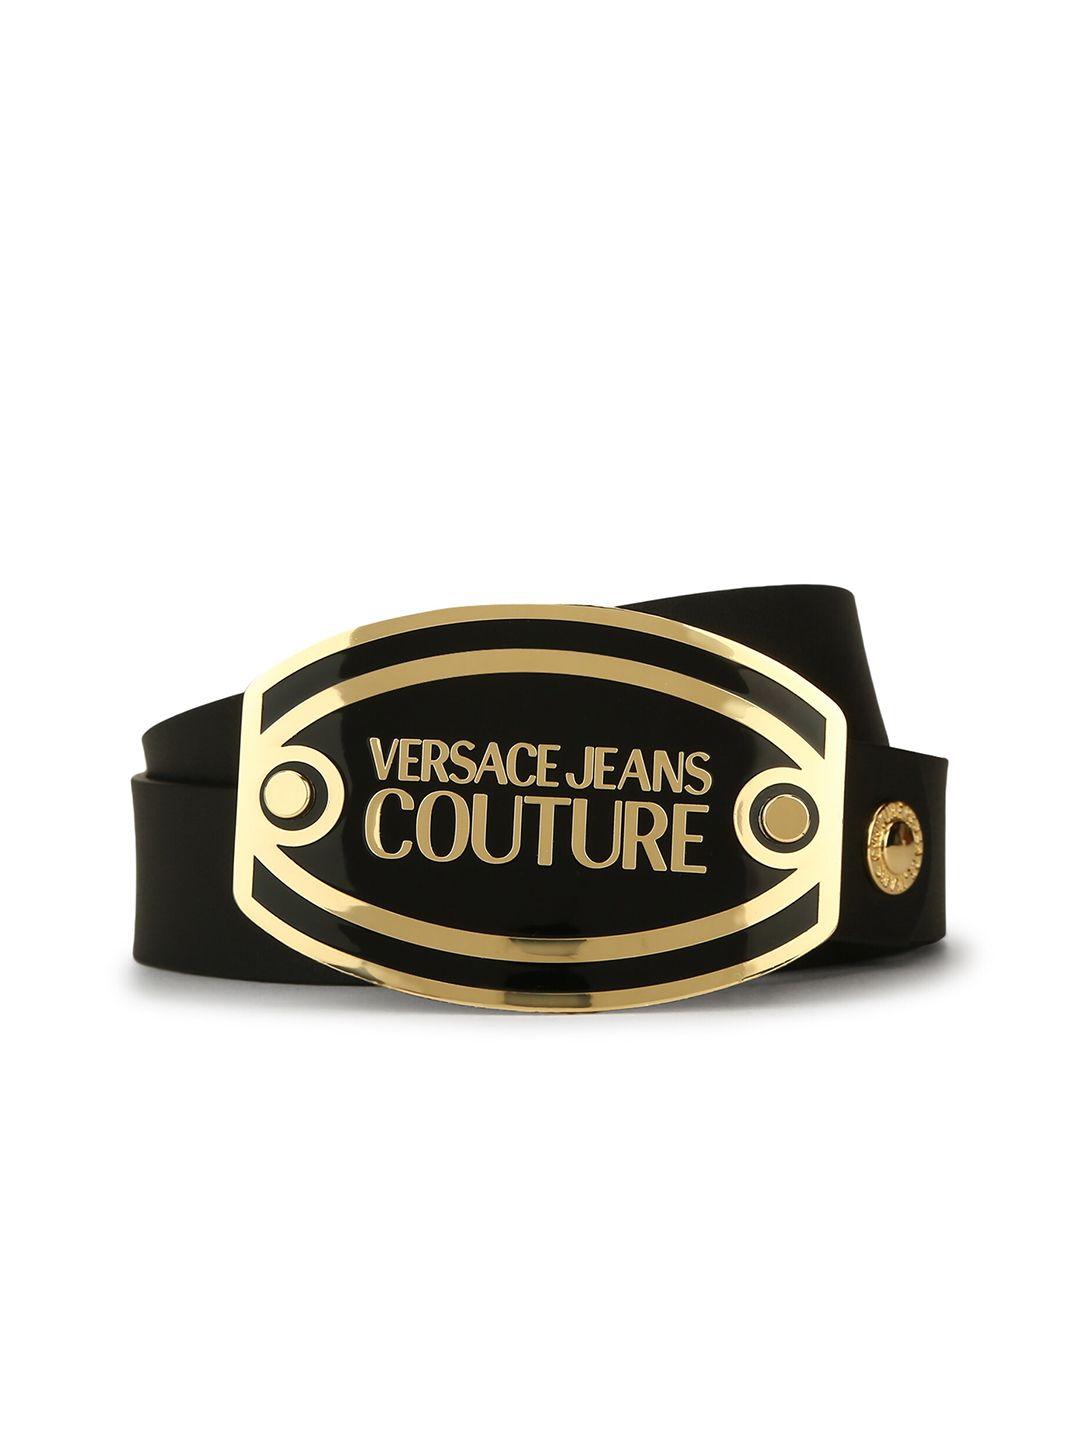 versace-jeans-couture-men-black-leather-belt